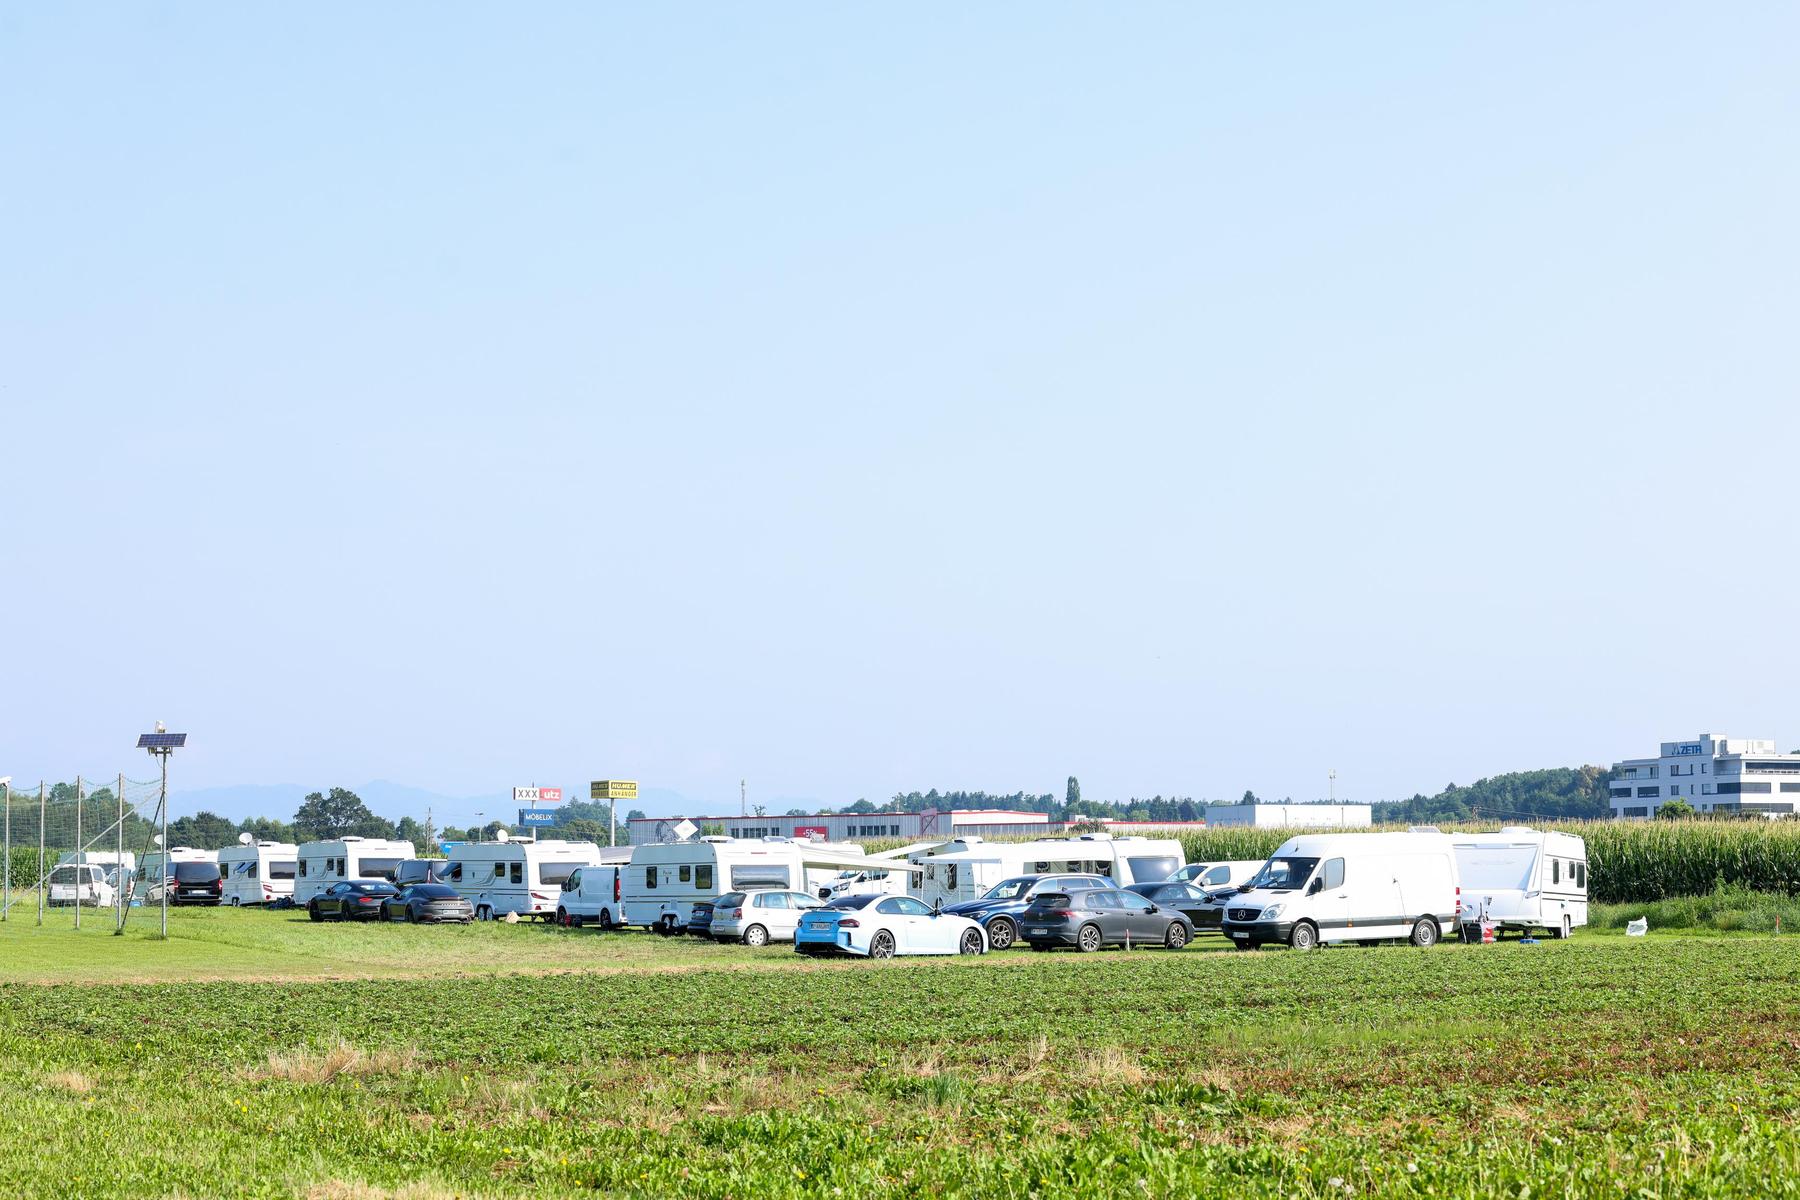 Modellflugplatz Dobl: Die Roma sind weg, aber Fragen bleiben